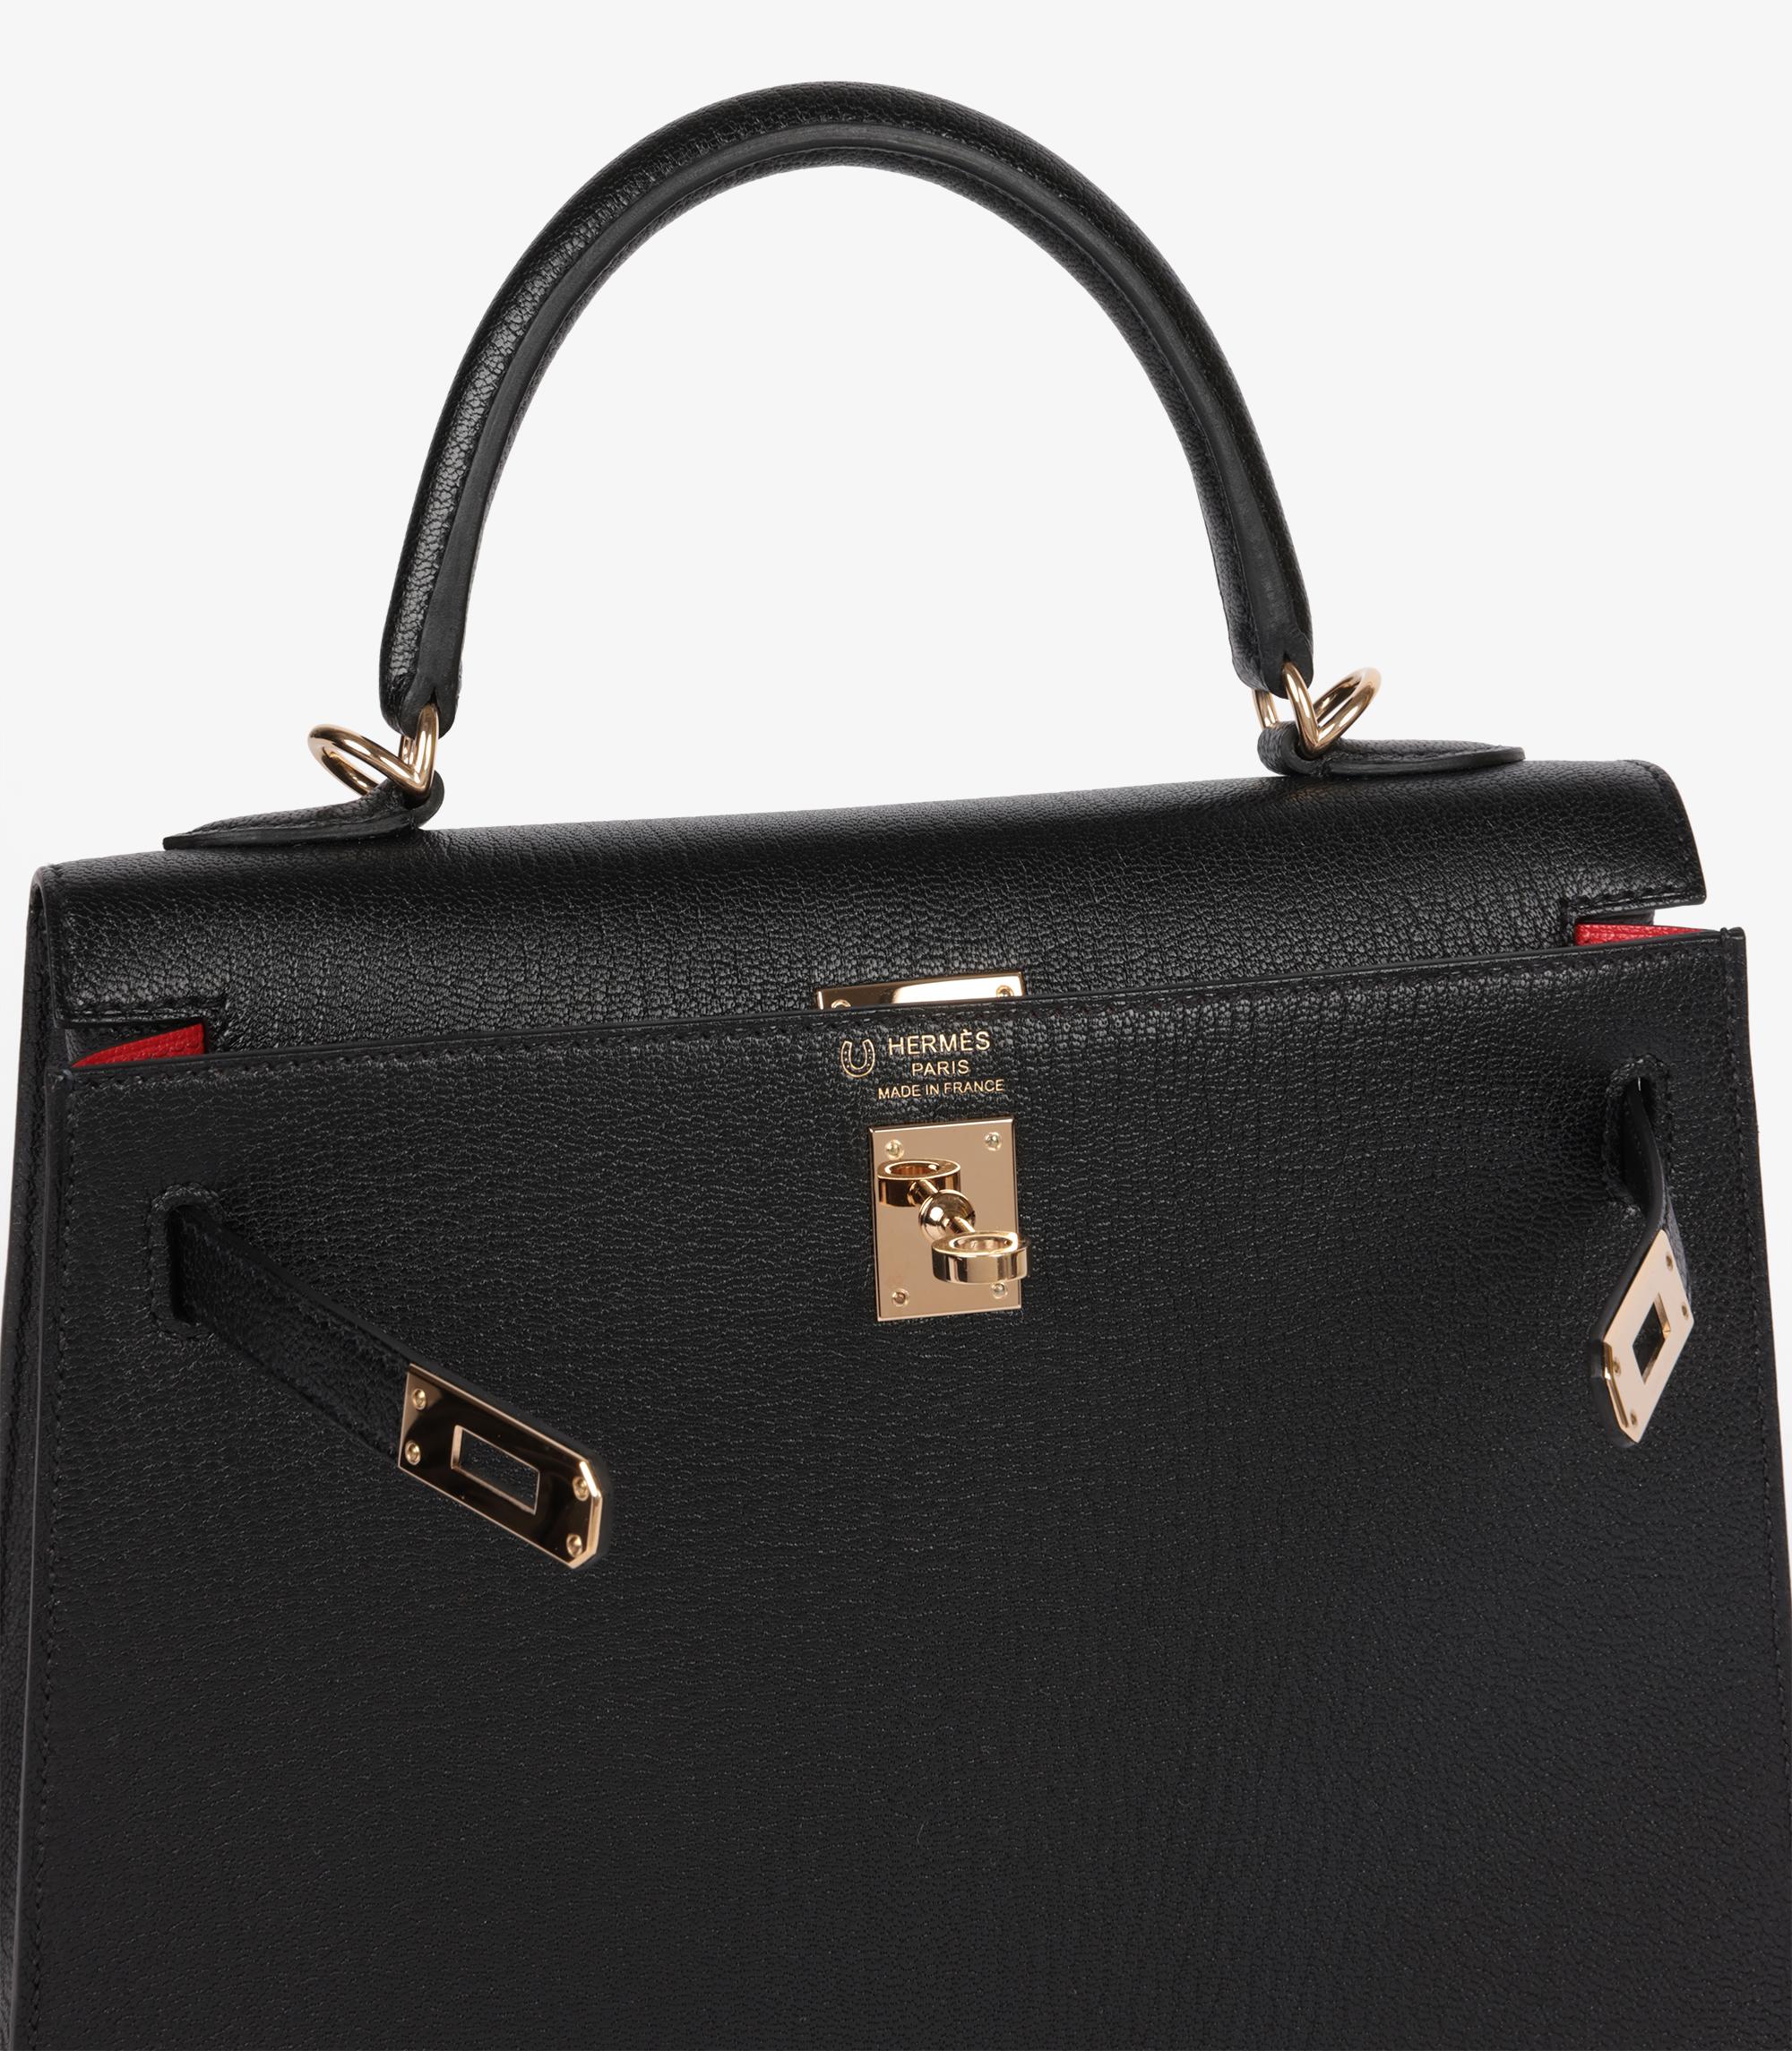 Hermès Black & Rouge De Coeur Chevre Mysore Leather HSS Special Order Kelly 25cm For Sale 3